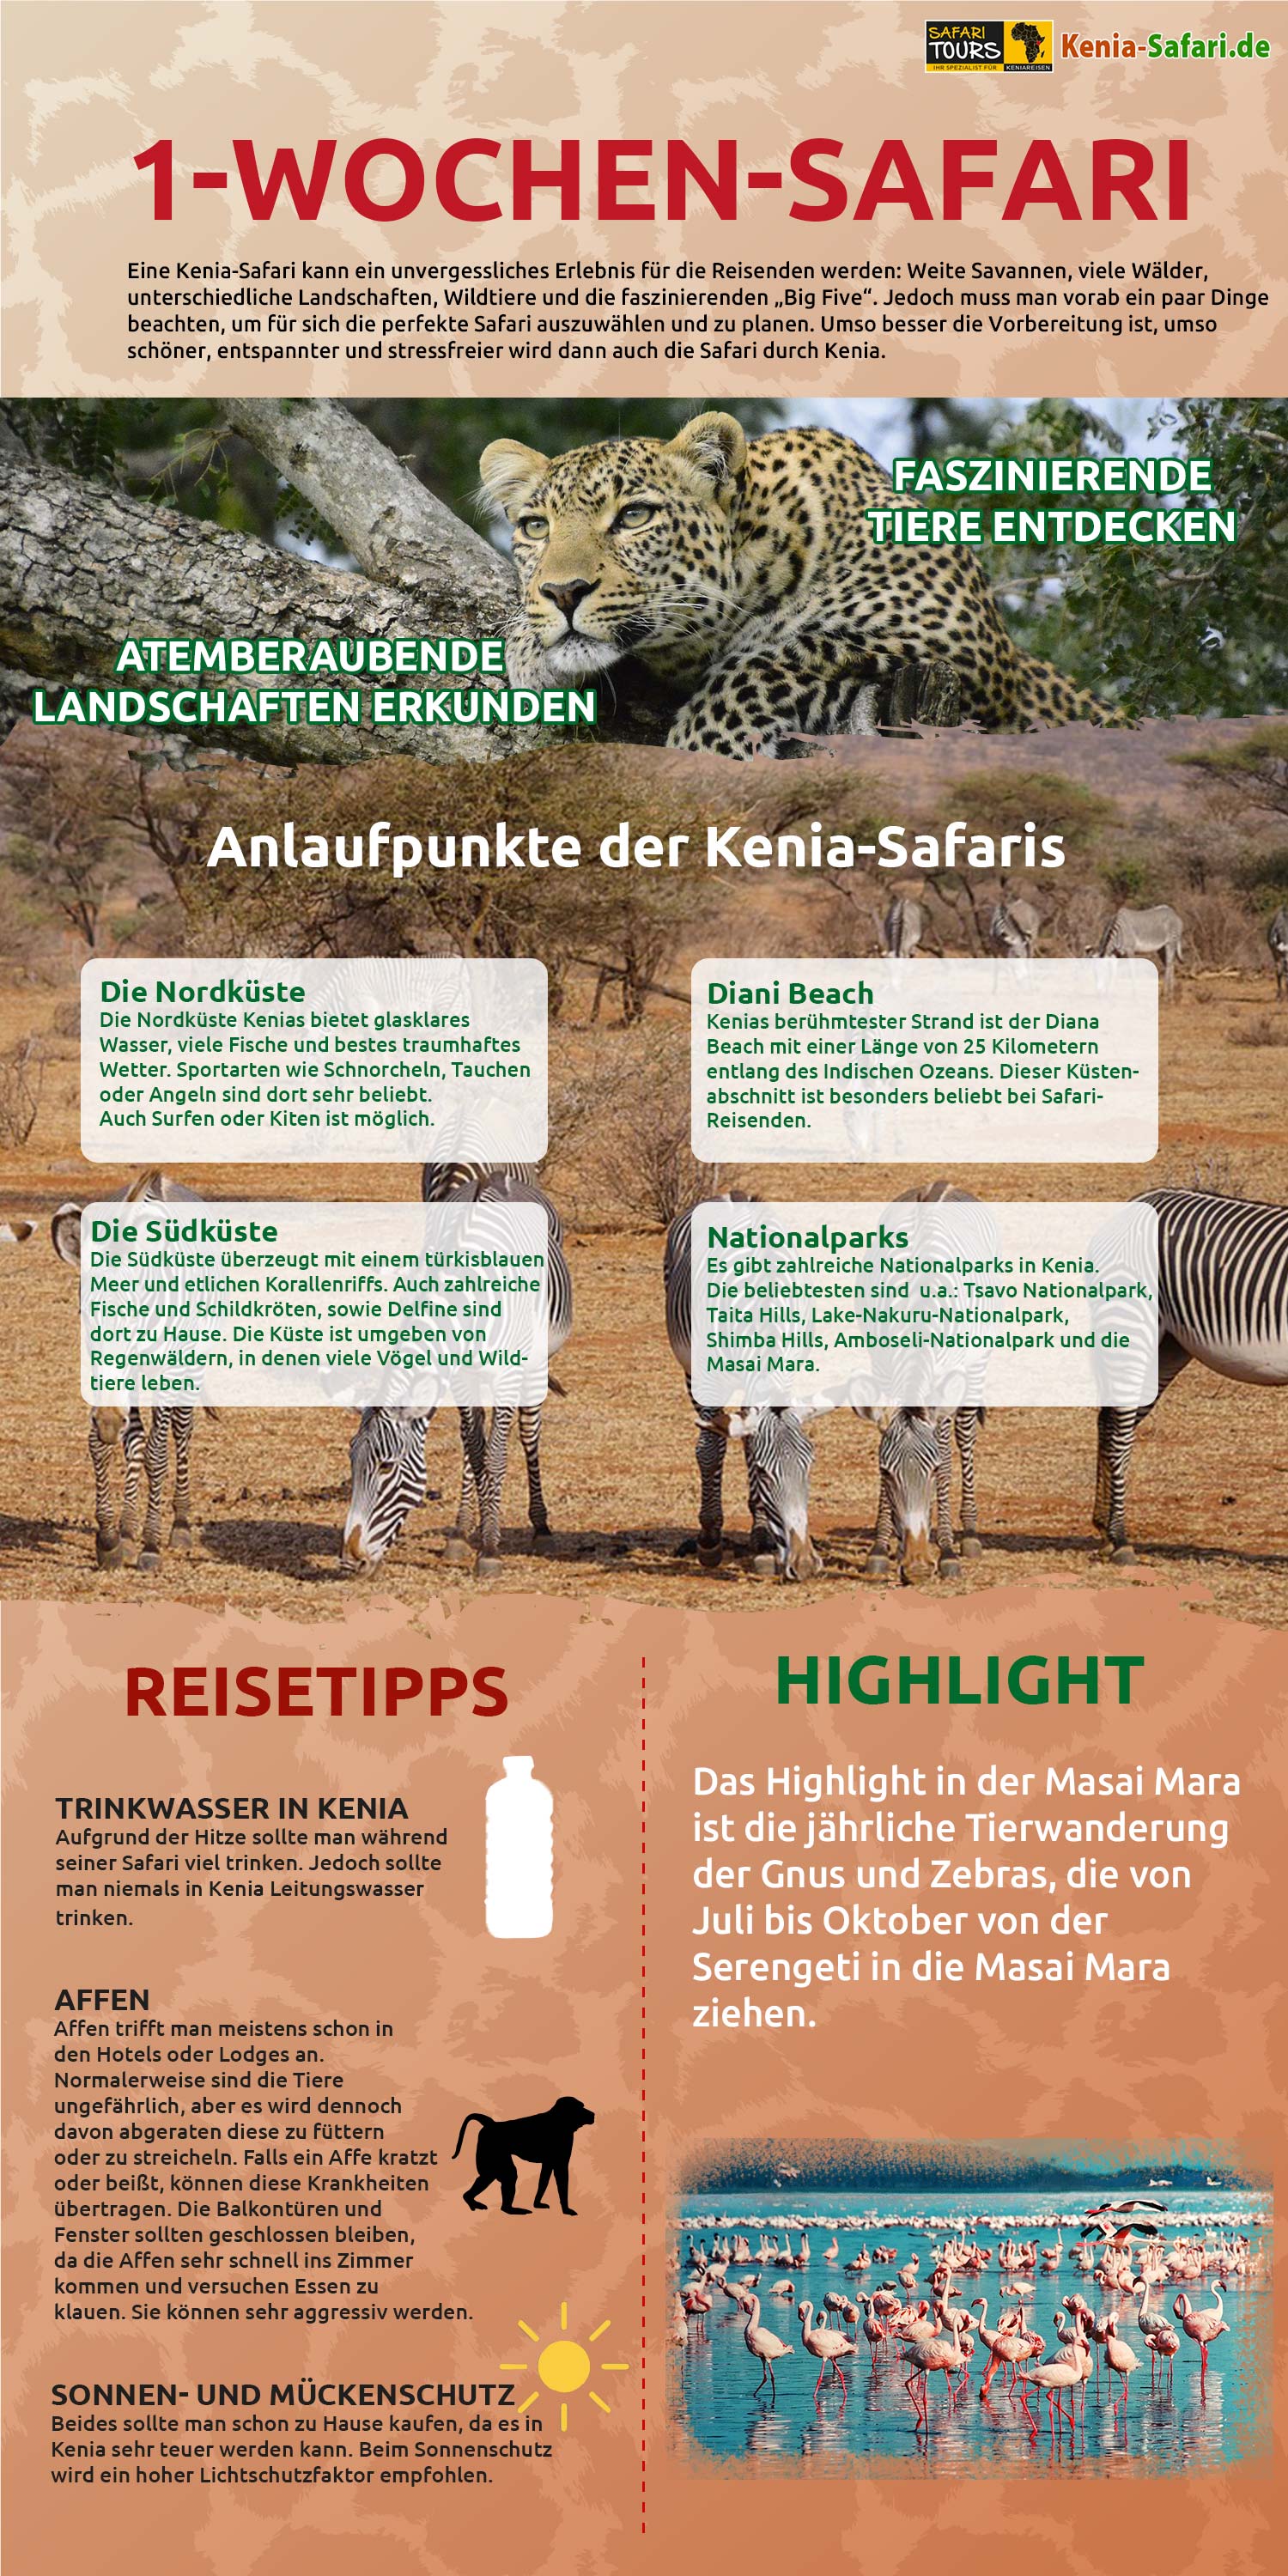 Infografik Kenia Safari 1 Wochen Safari